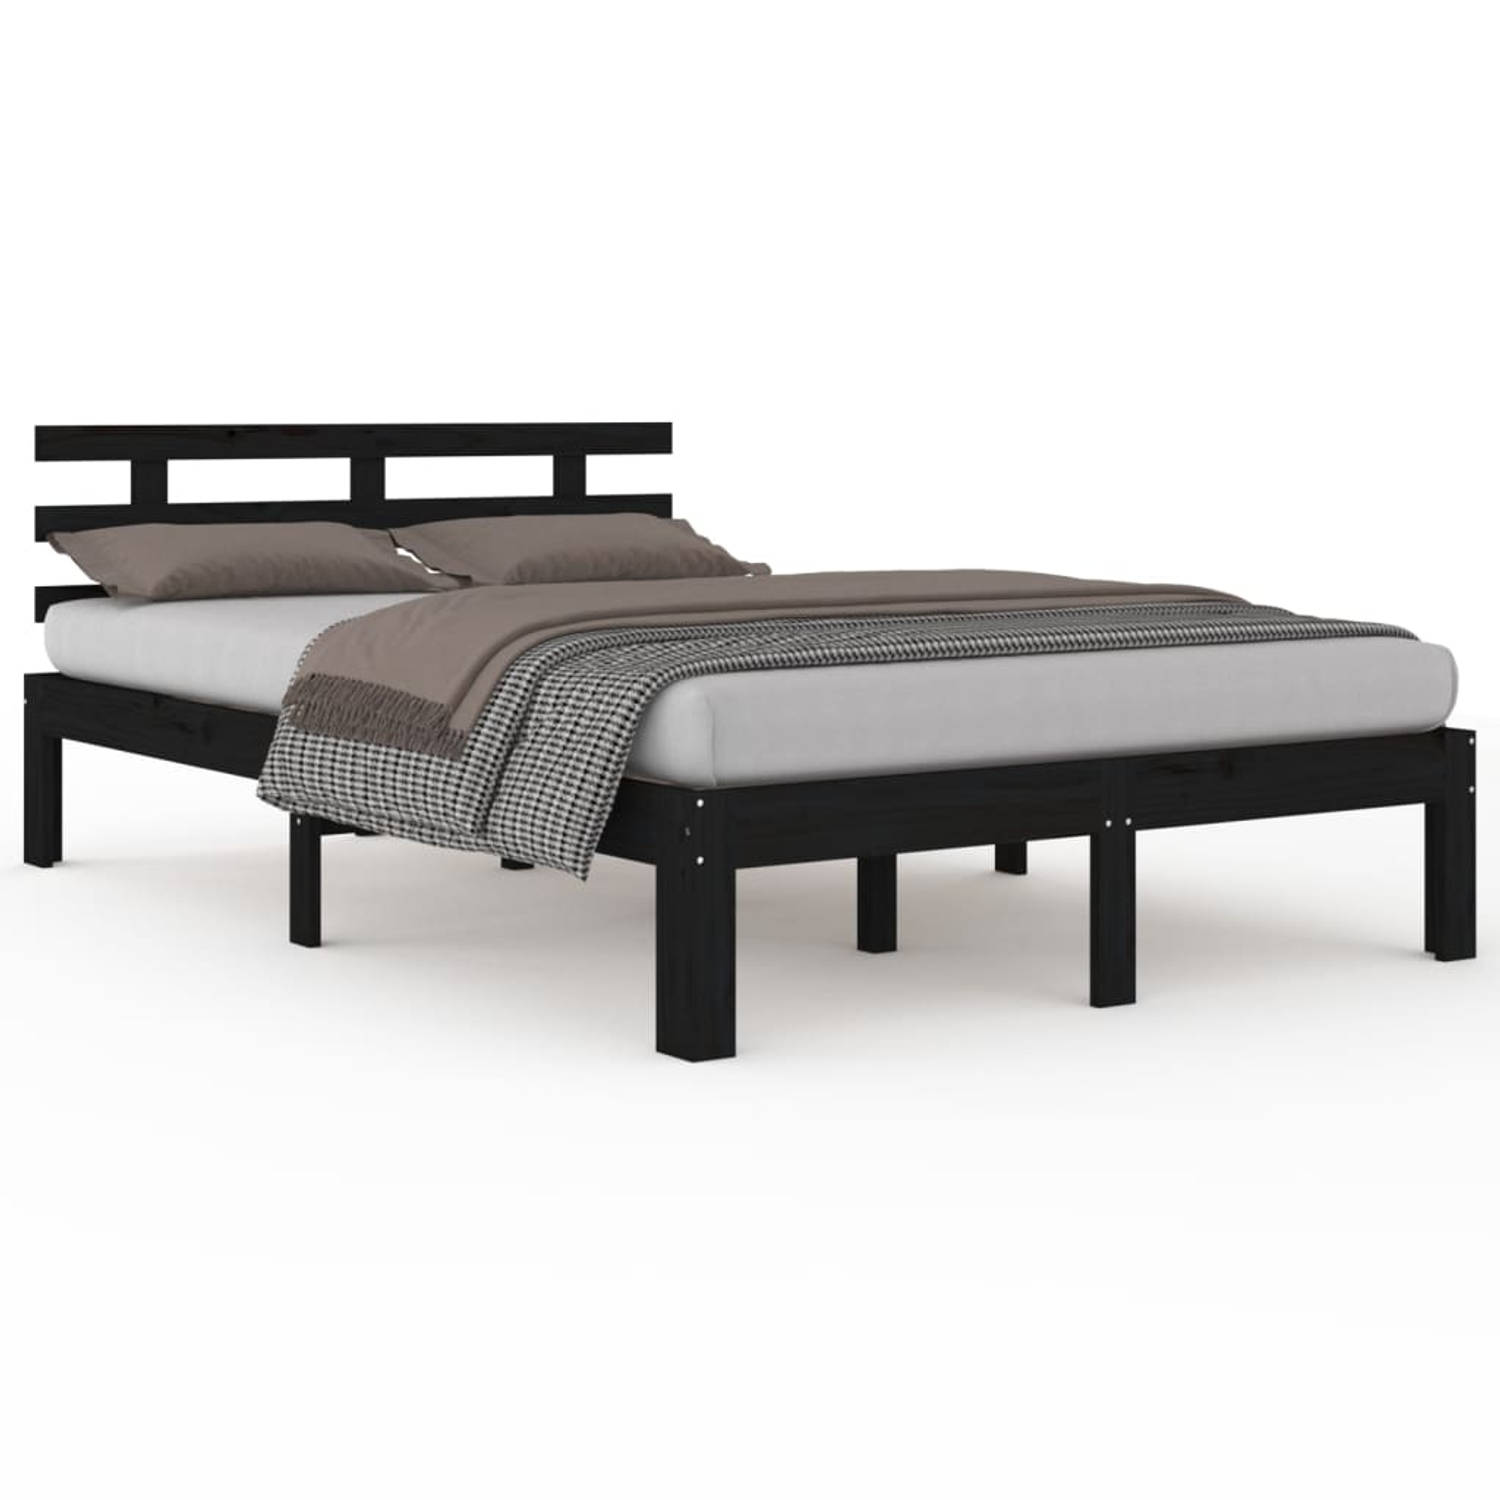 The Living Store Bedframe massief hout zwart 135x190 cm 4FT6 Double - Bedframe - Bedframes - Bed - Bedbodem - Ledikant - Bed Frame - Massief Houten Bedframe - Slaapmeubel - Tweeper